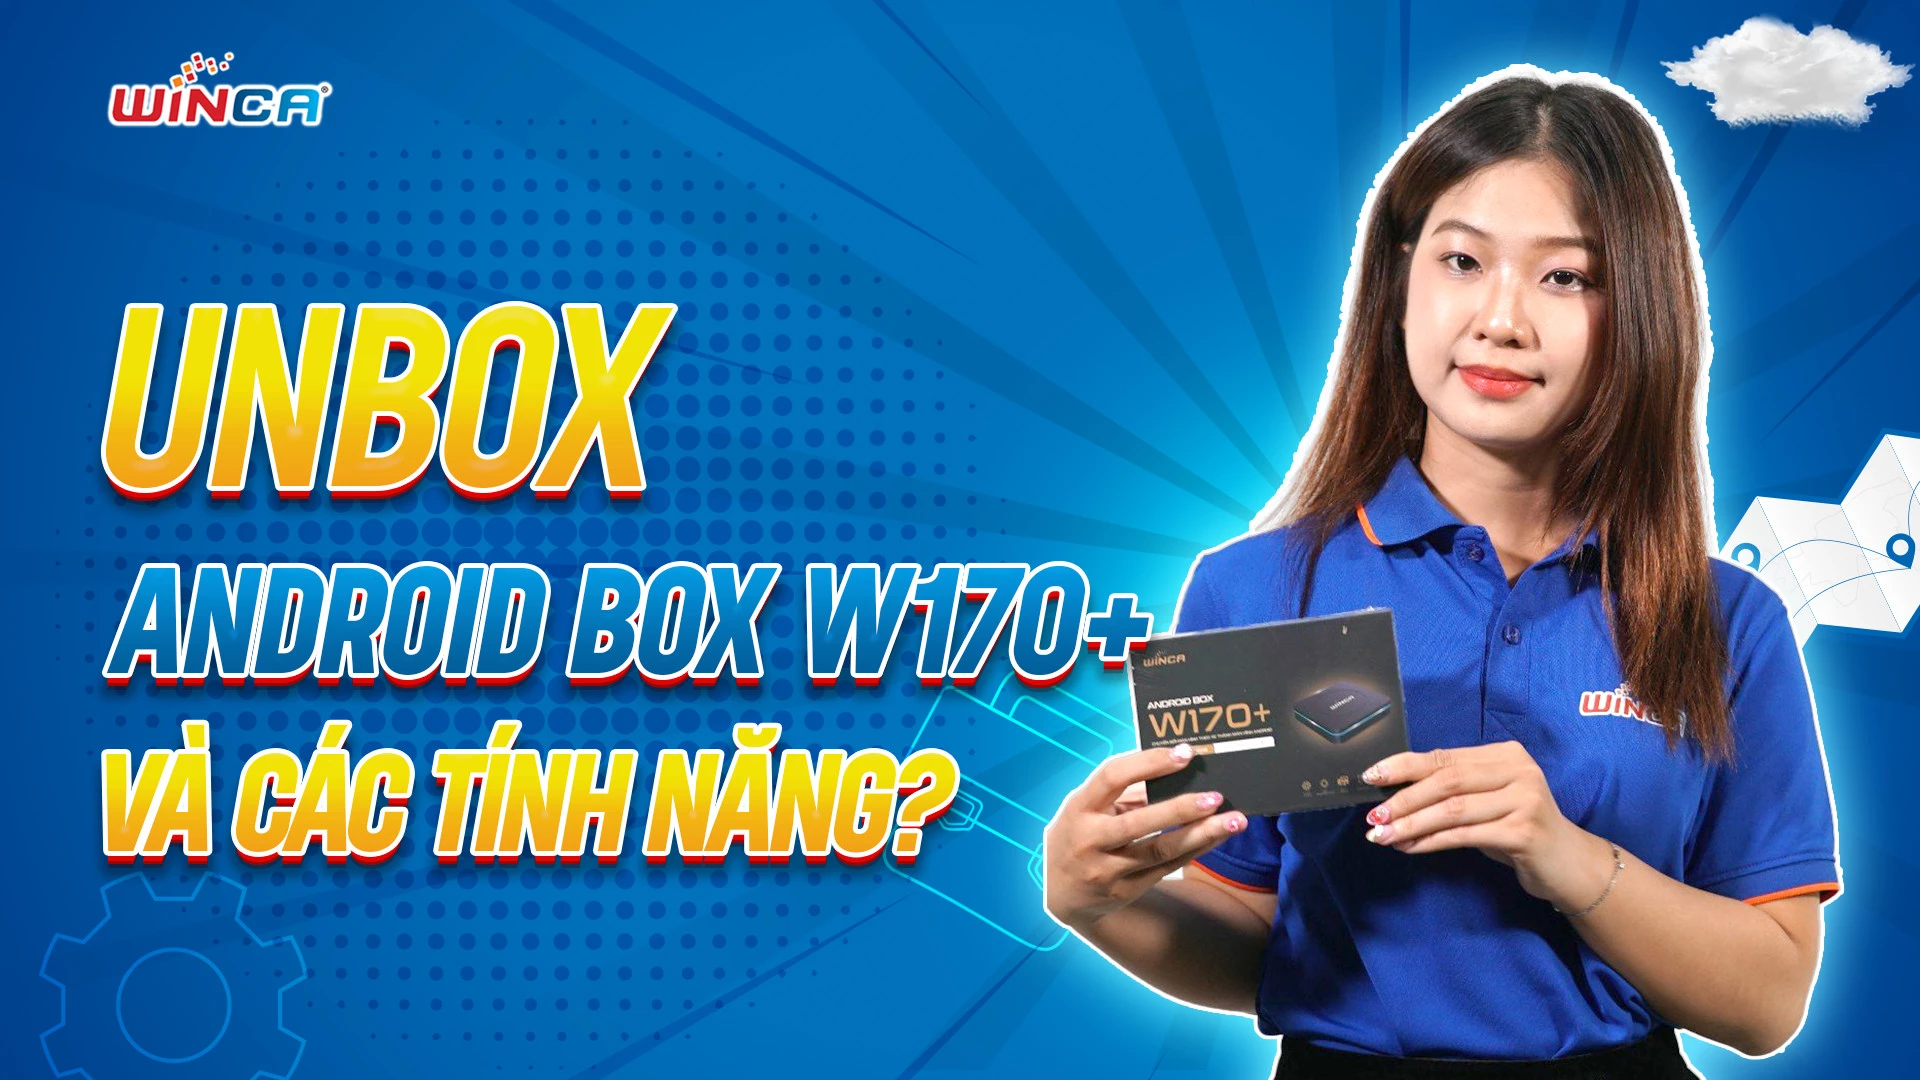 ANDROID BOX W170+ | SẢN PHẨM MỚI CỦA WINCA VIỆT NAM